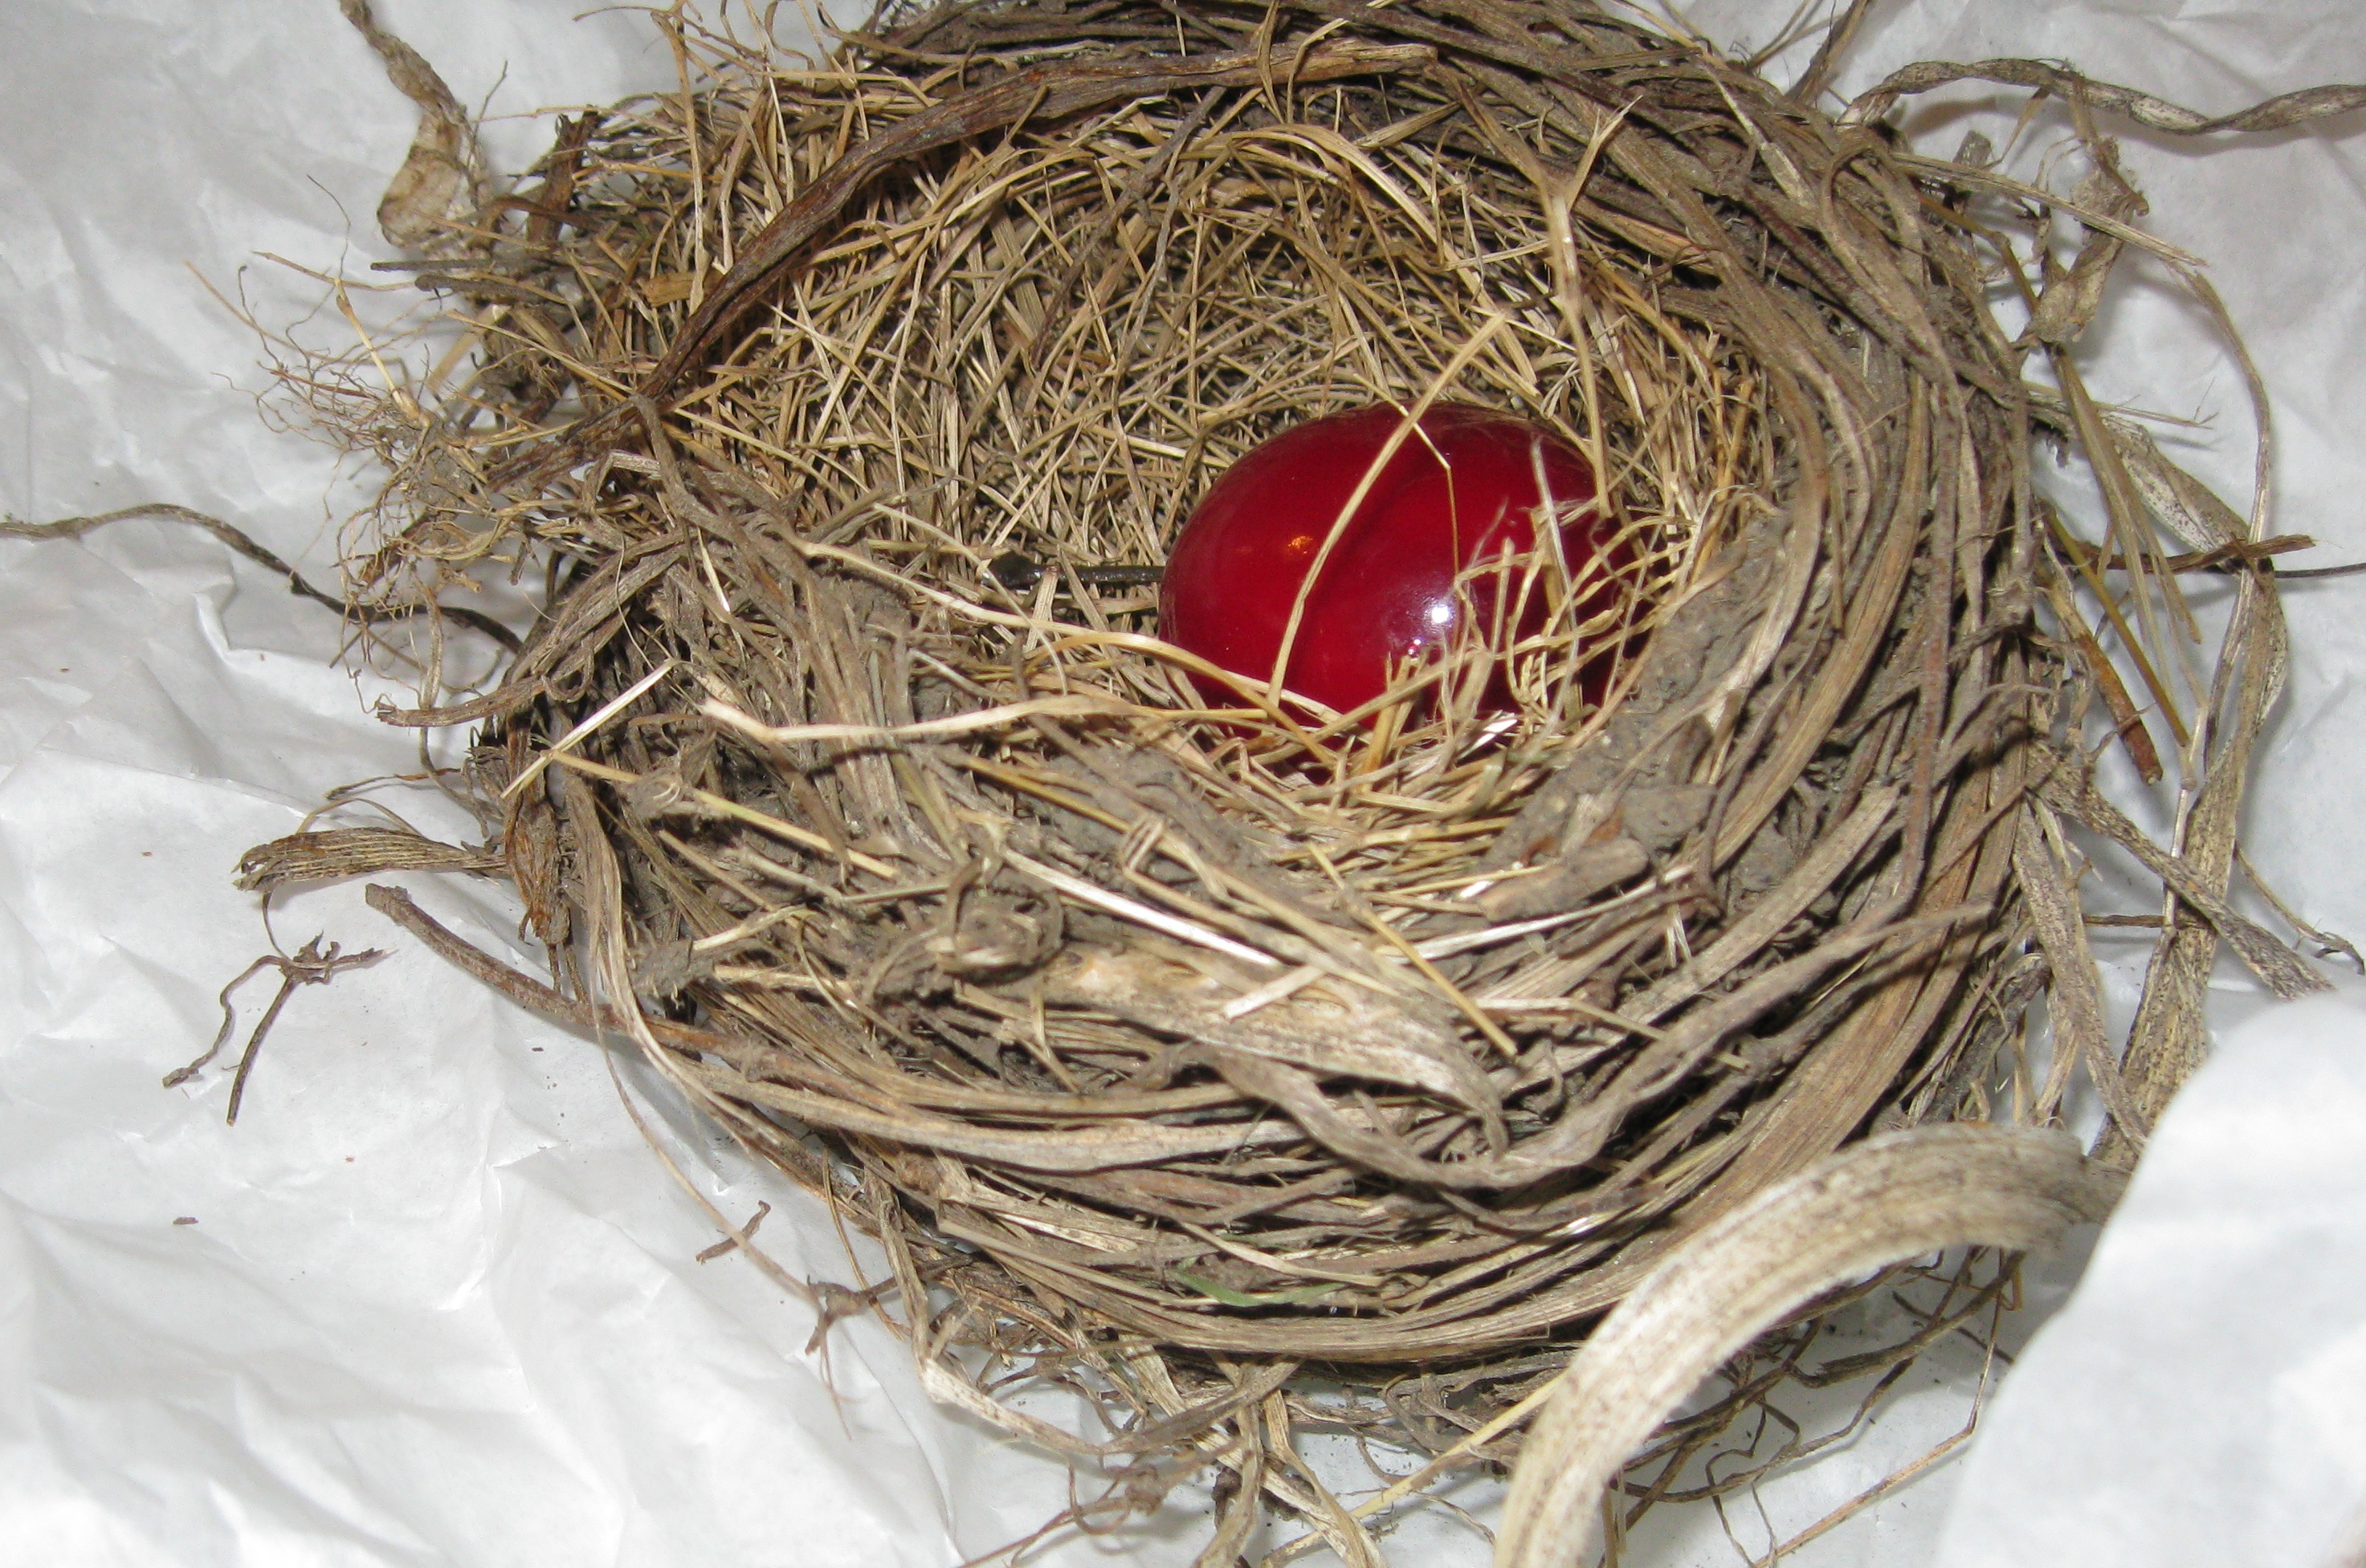 The Nest, part 1